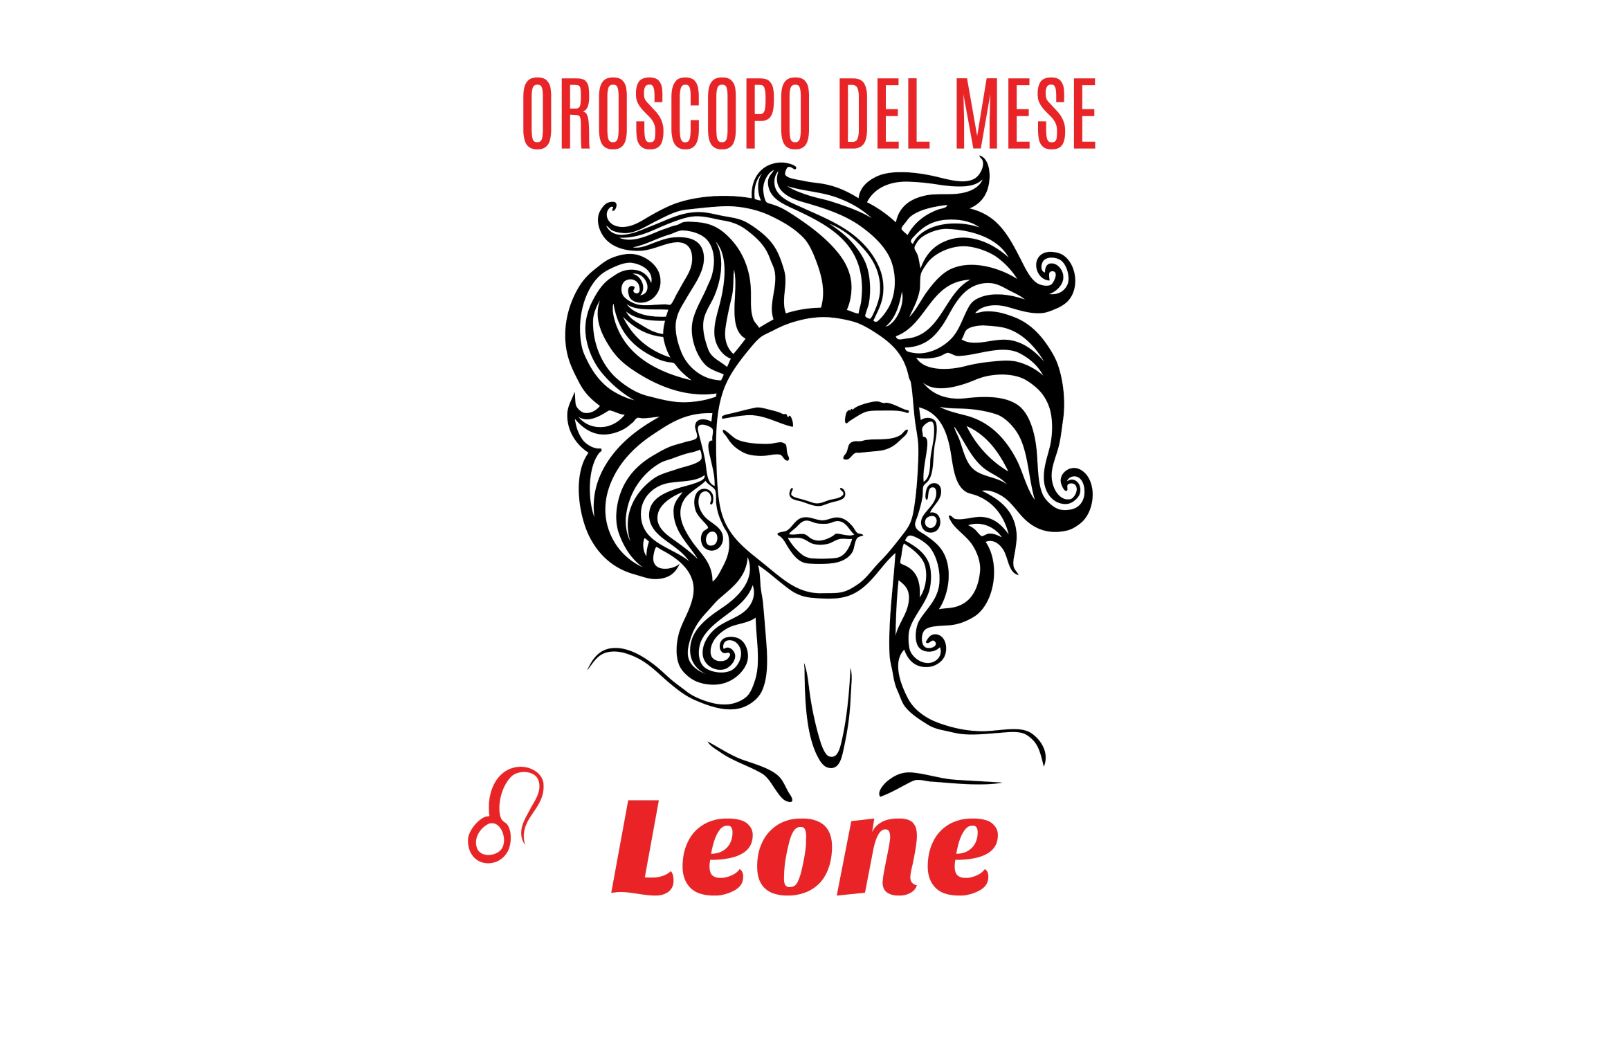 Oroscopo del mese: Leone - marzo 2019